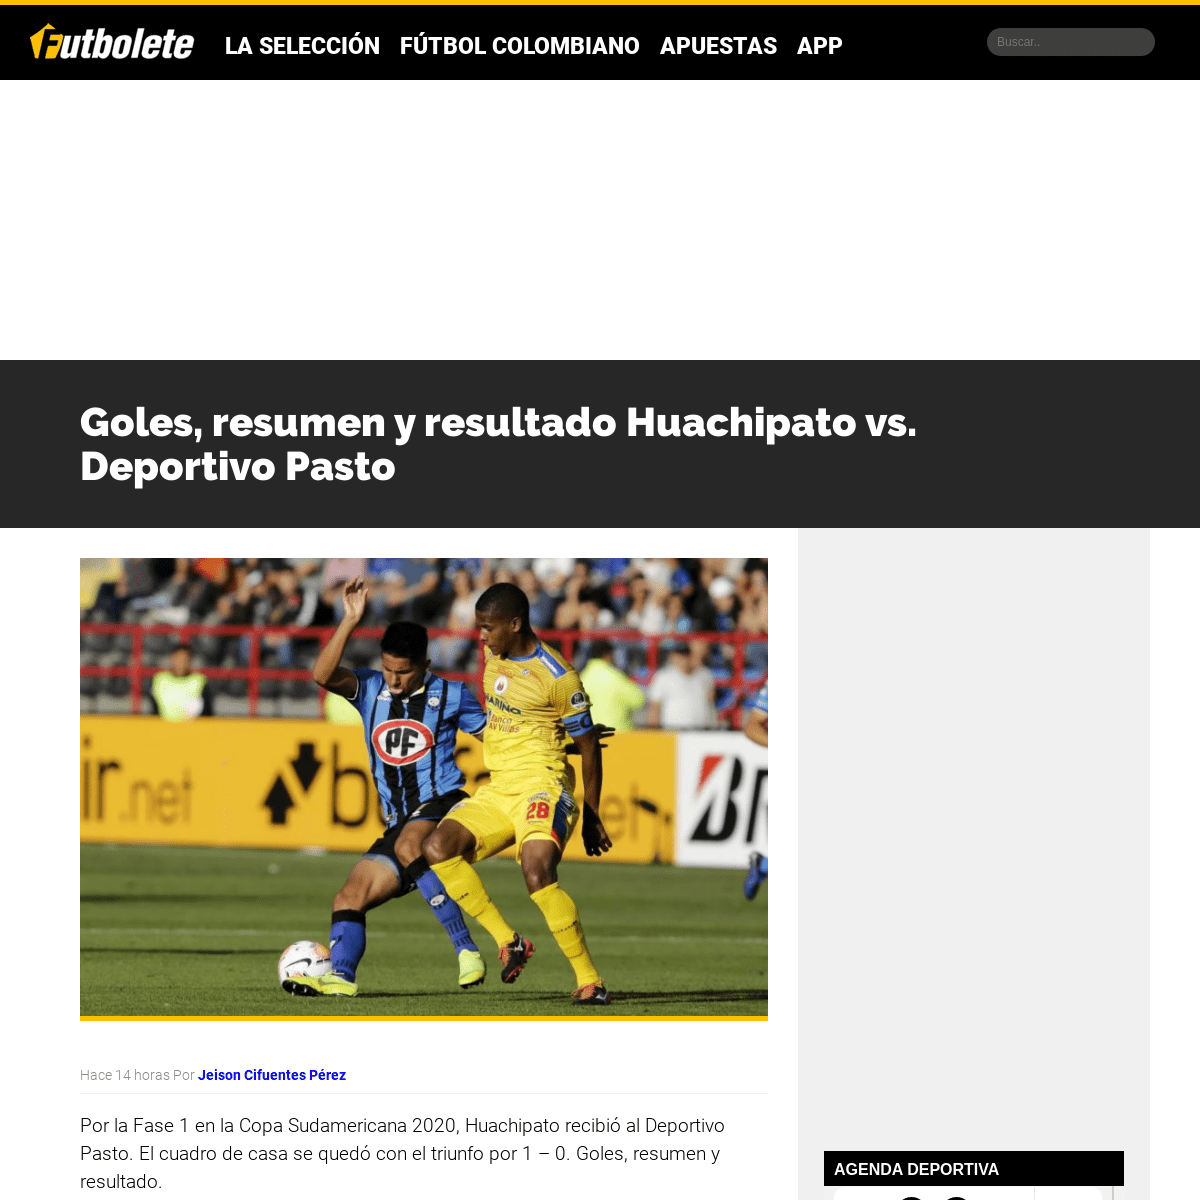 A complete backup of futbolete.com/futbol-colombiano/goles-resumen-y-resultado-huachipato-vs-deportivo-pasto/461814/